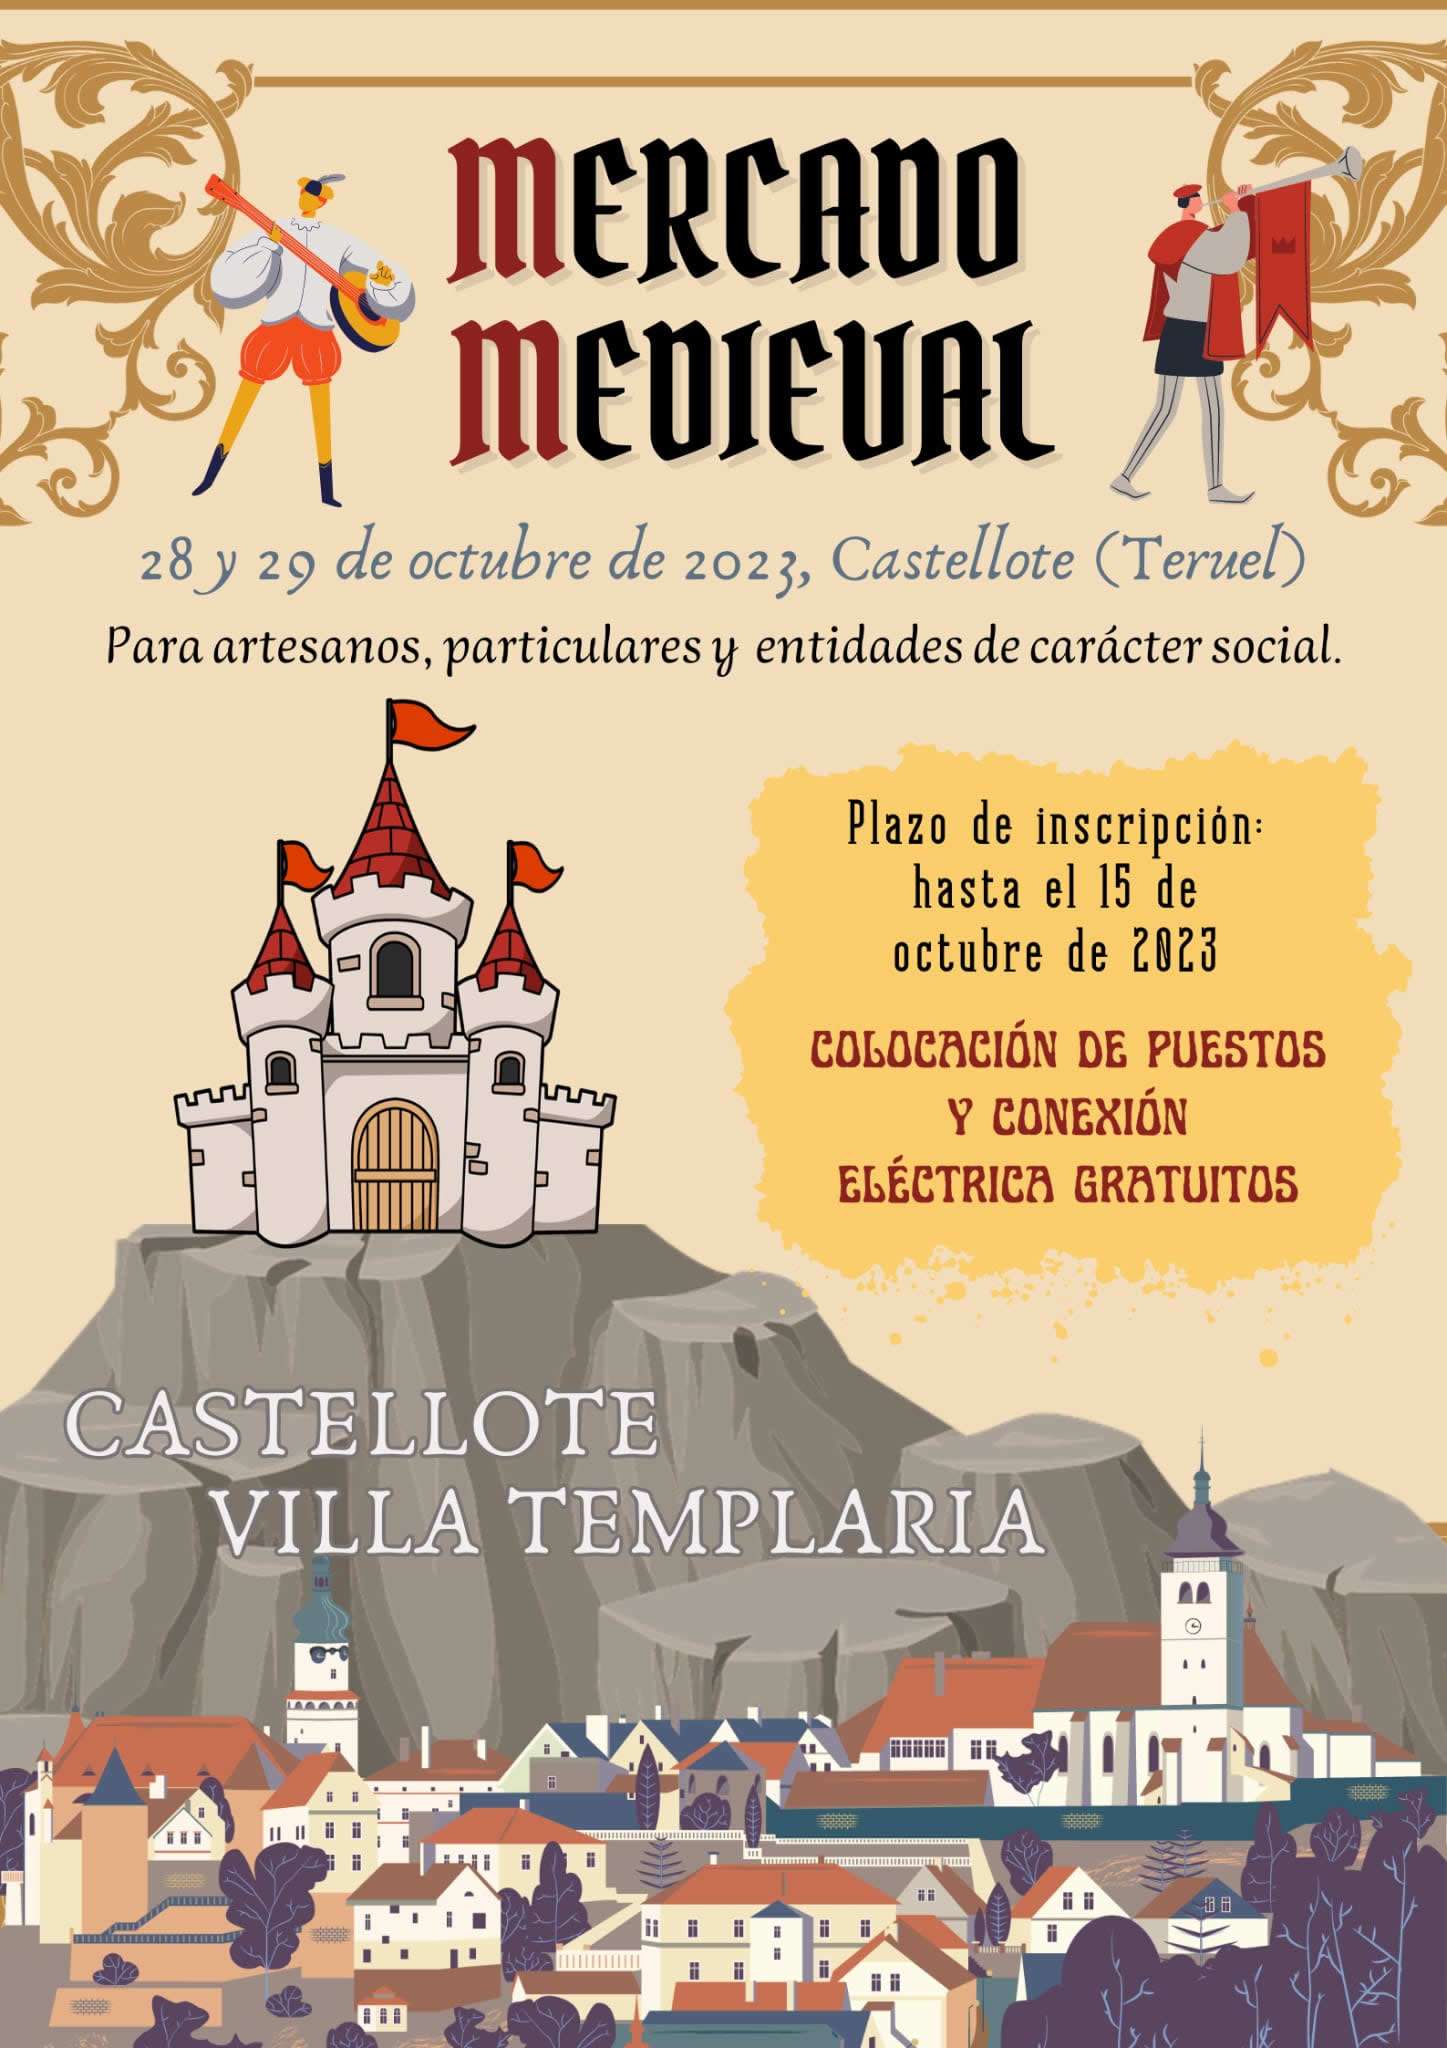 Mercados medievales en la RED / Mercado medieval Castellote Villa templaria Octubre 2023